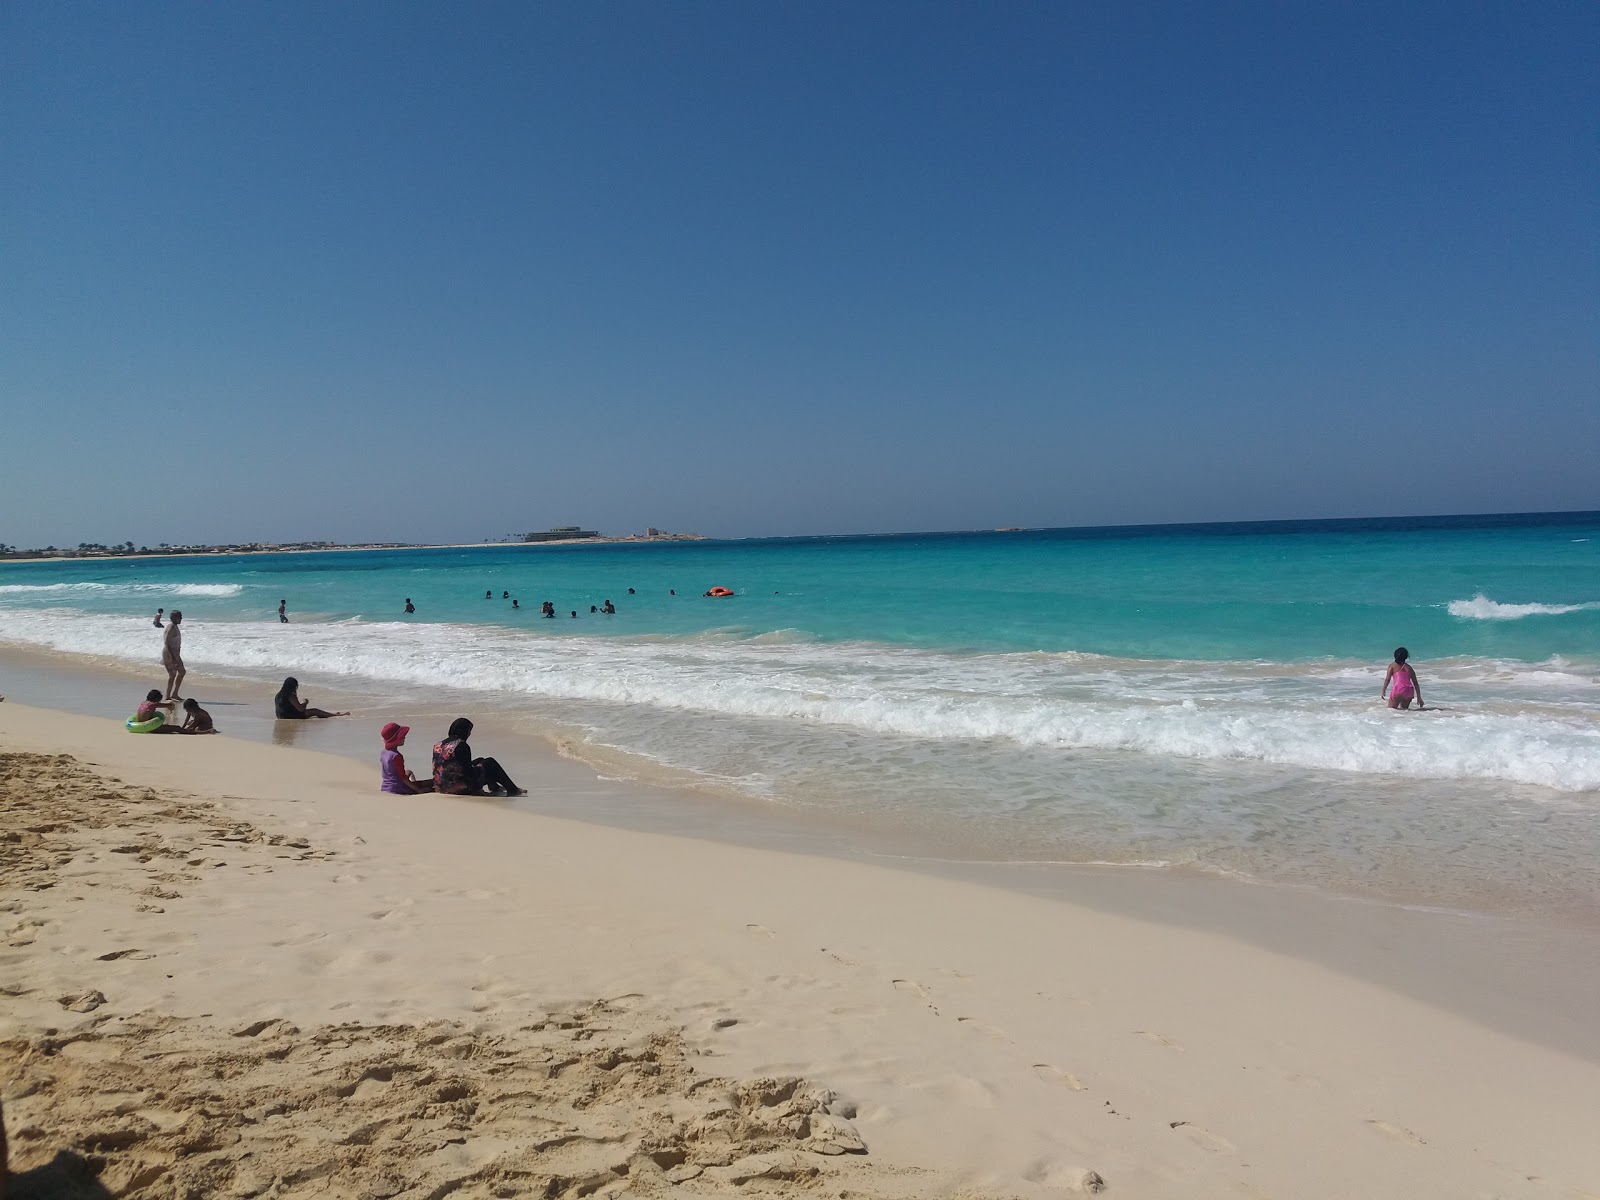 Fotografie cu Santa Monika Beach cu o suprafață de apa pură turcoaz